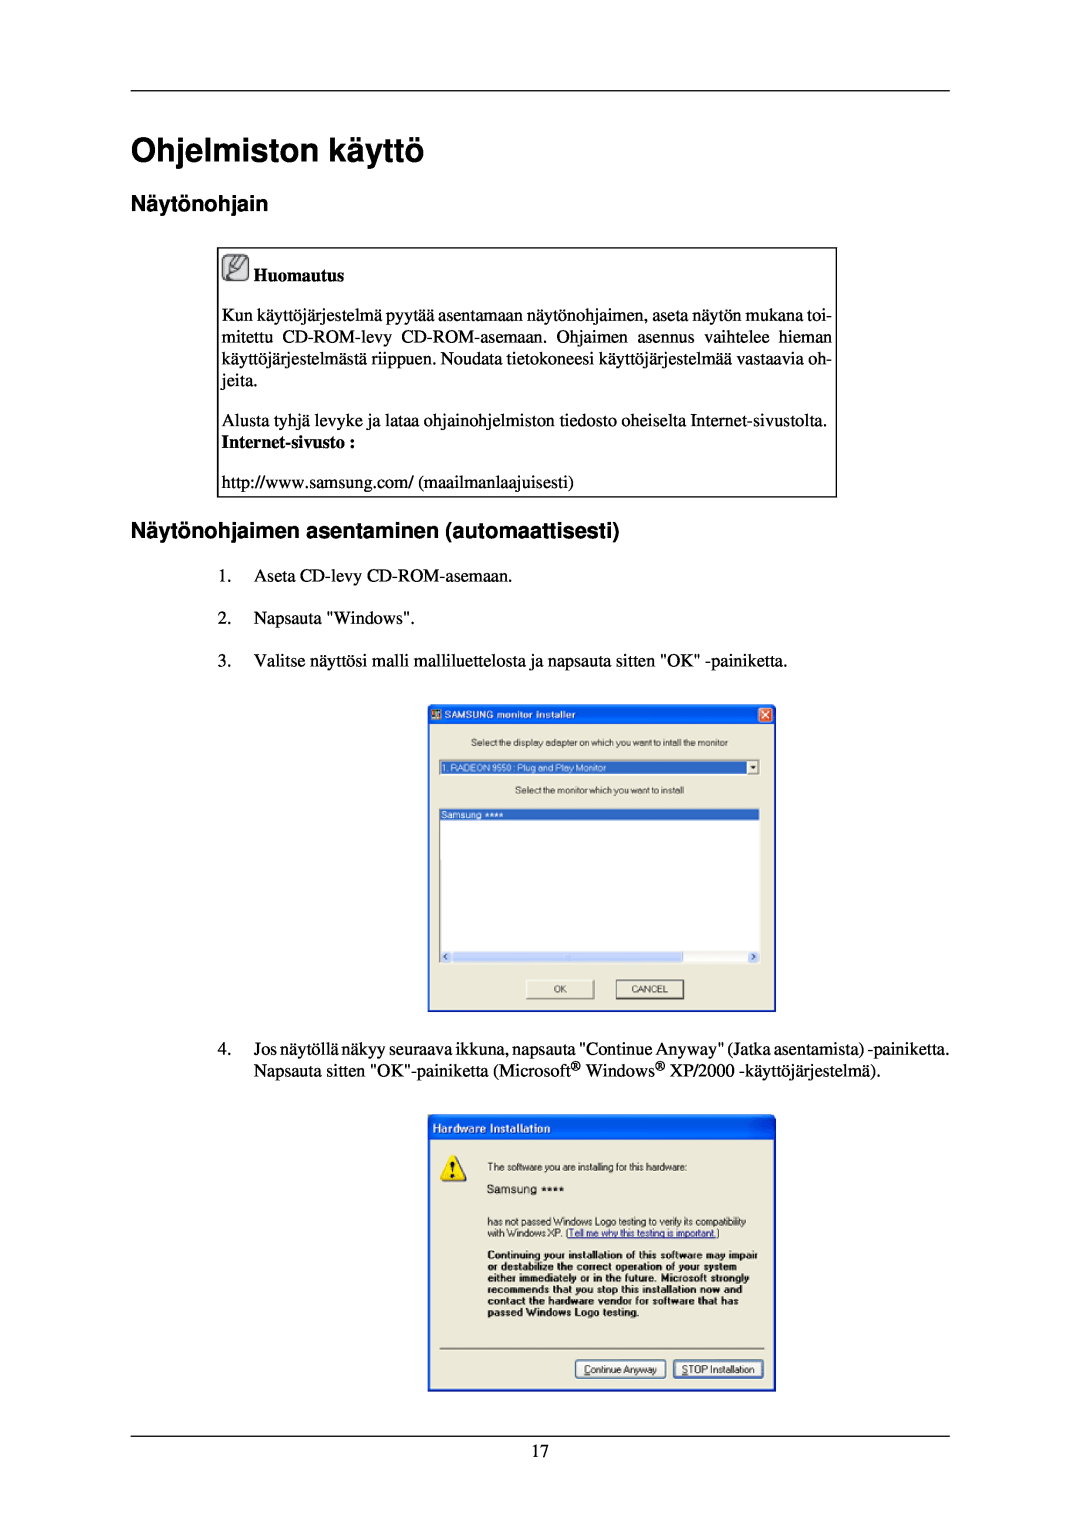 Samsung LS24CMKKFV/EN manual Ohjelmiston käyttö, Näytönohjain, Näytönohjaimen asentaminen automaattisesti 